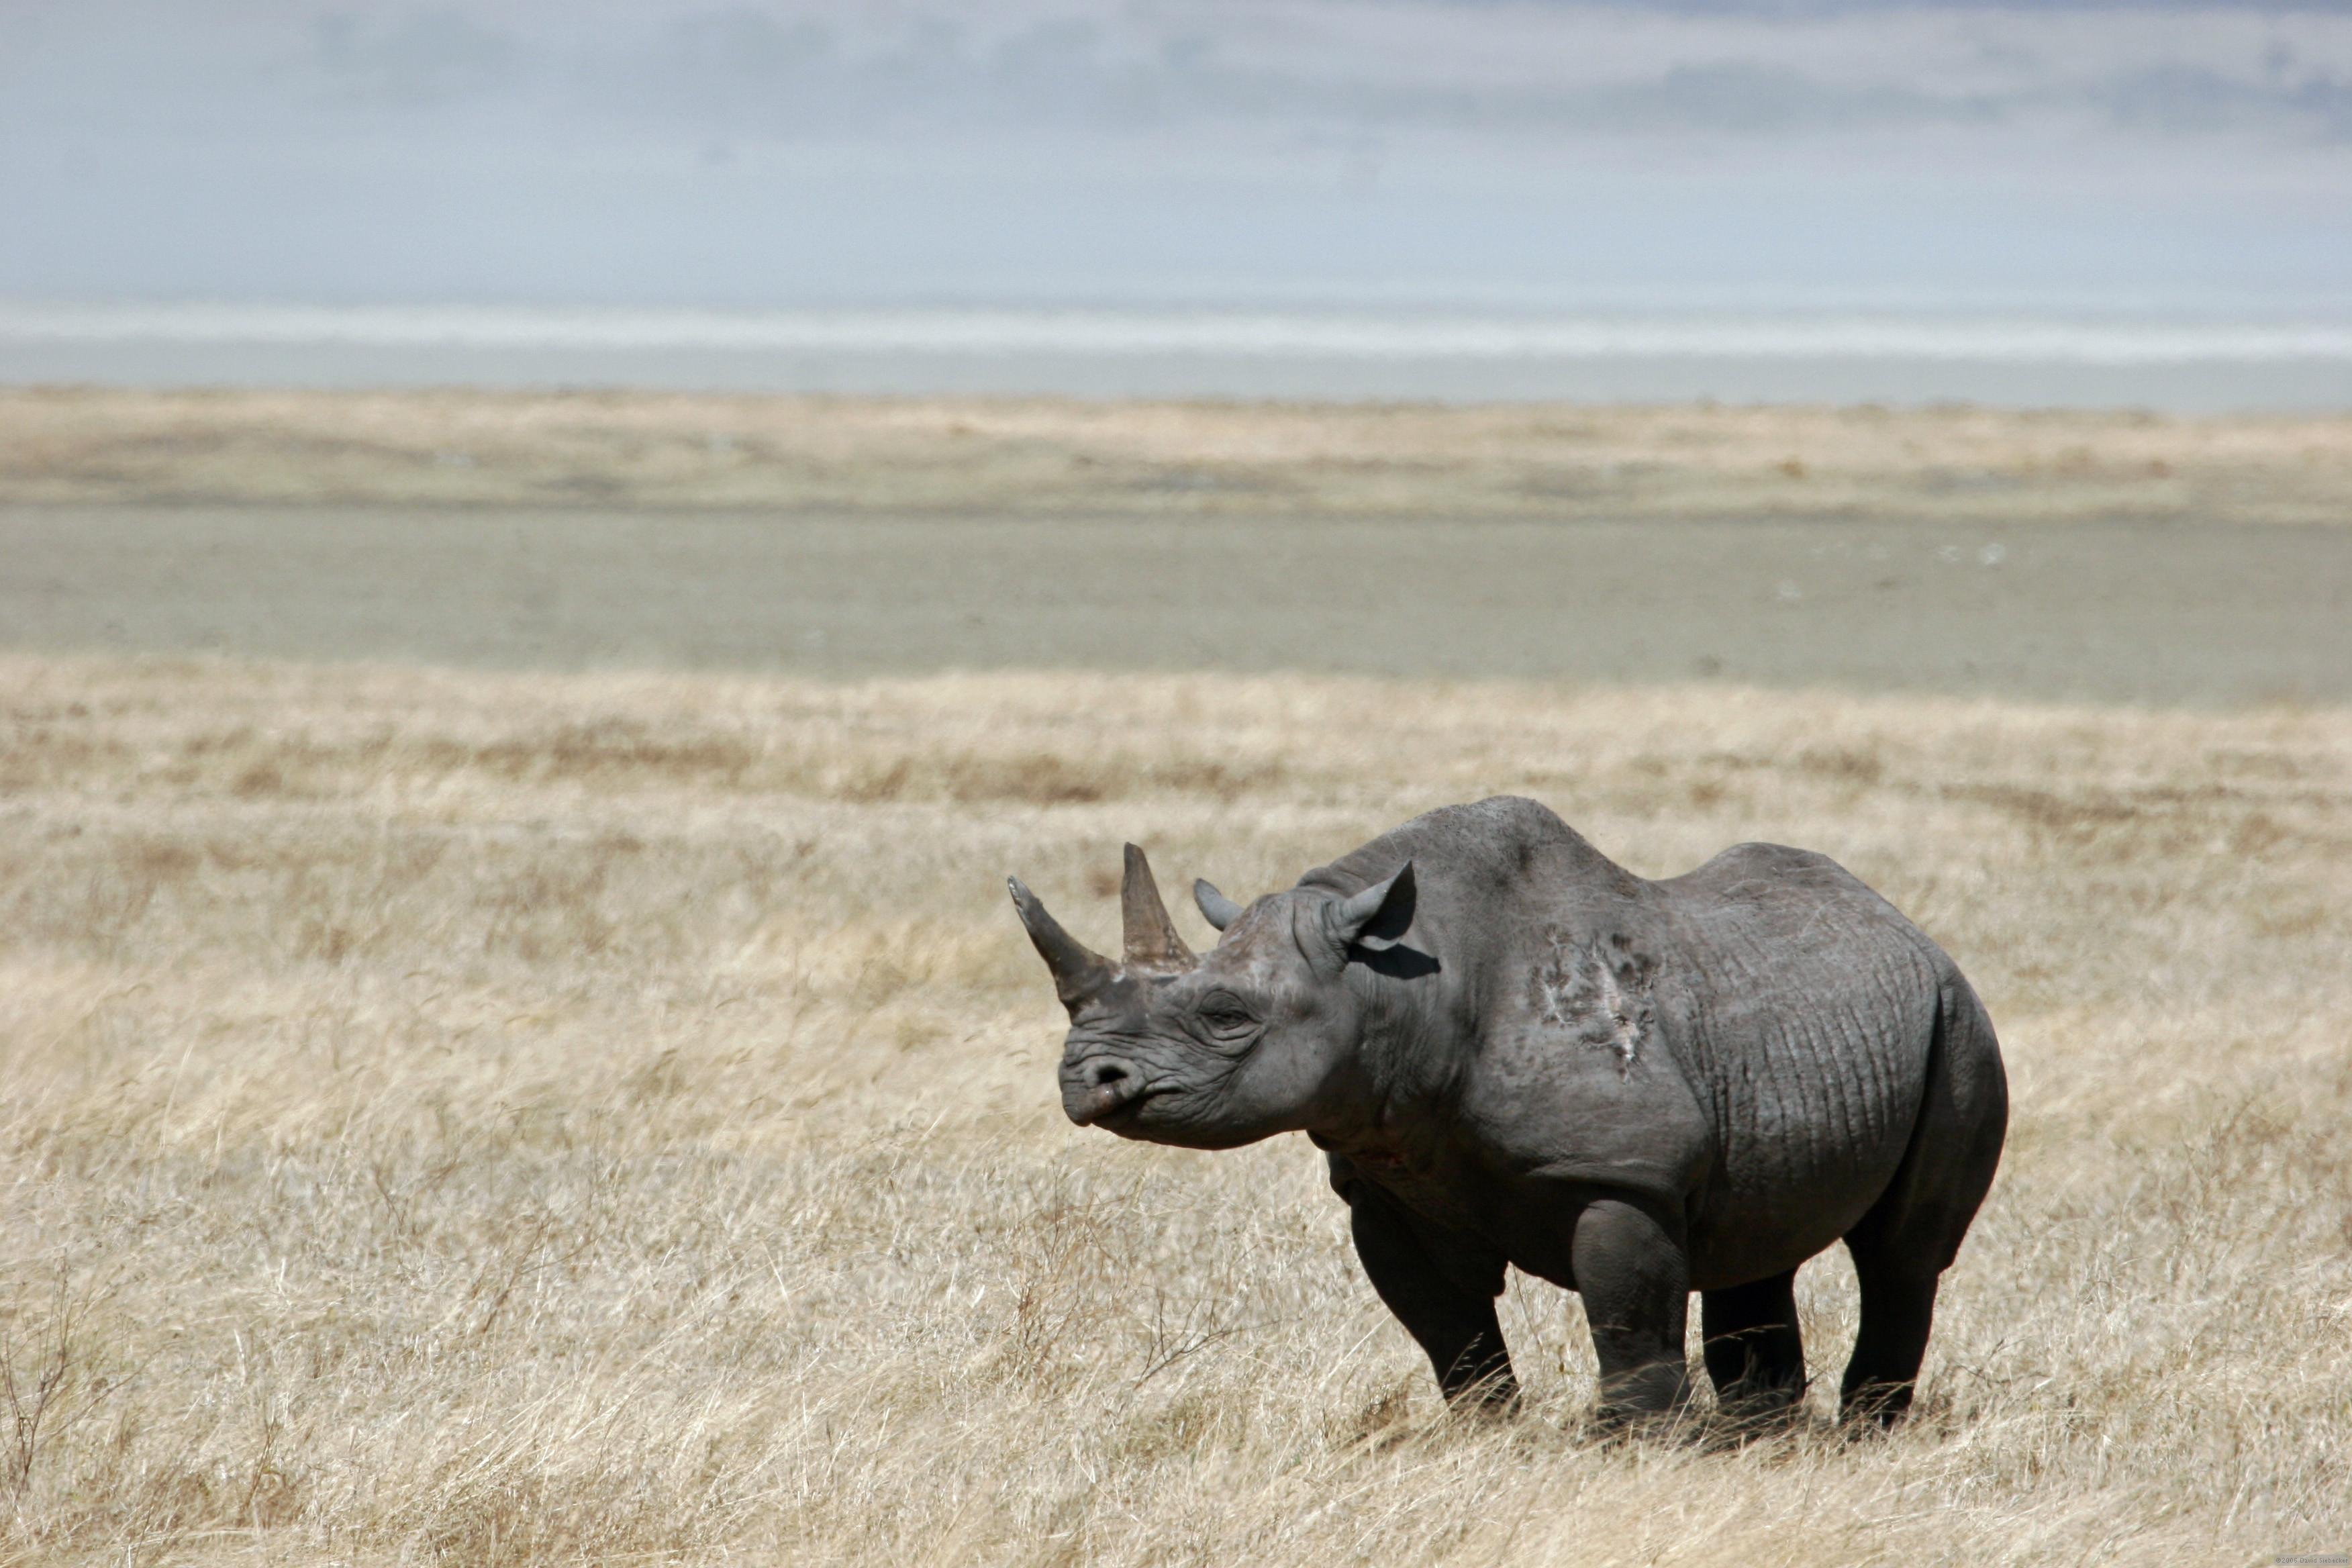 animals rhinoceros black rhinoceros 3504x2336 wallpaper High